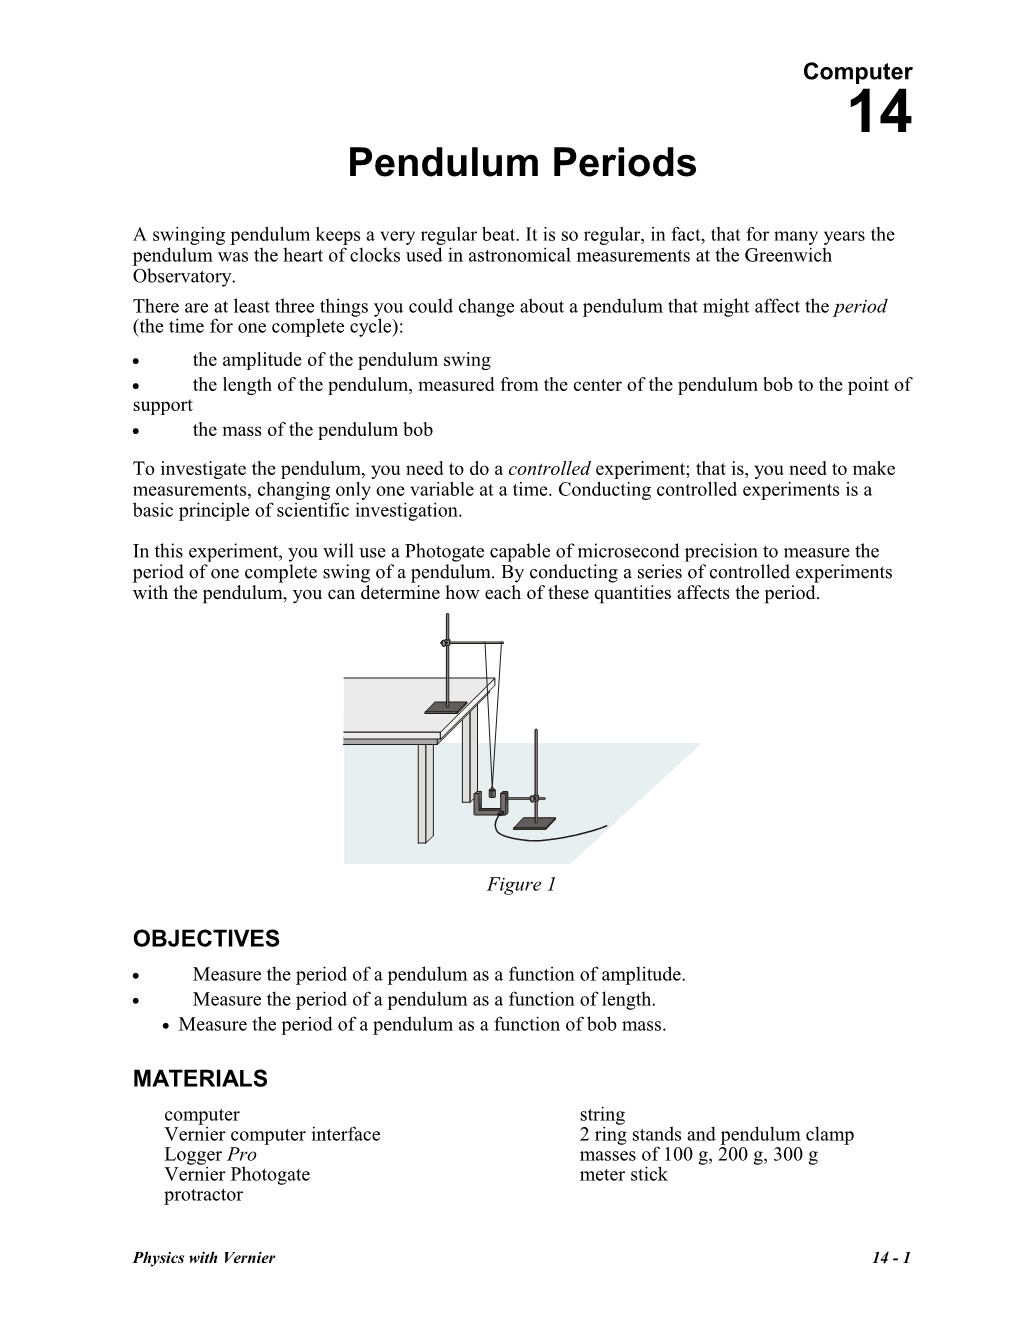 Pendulum Periods